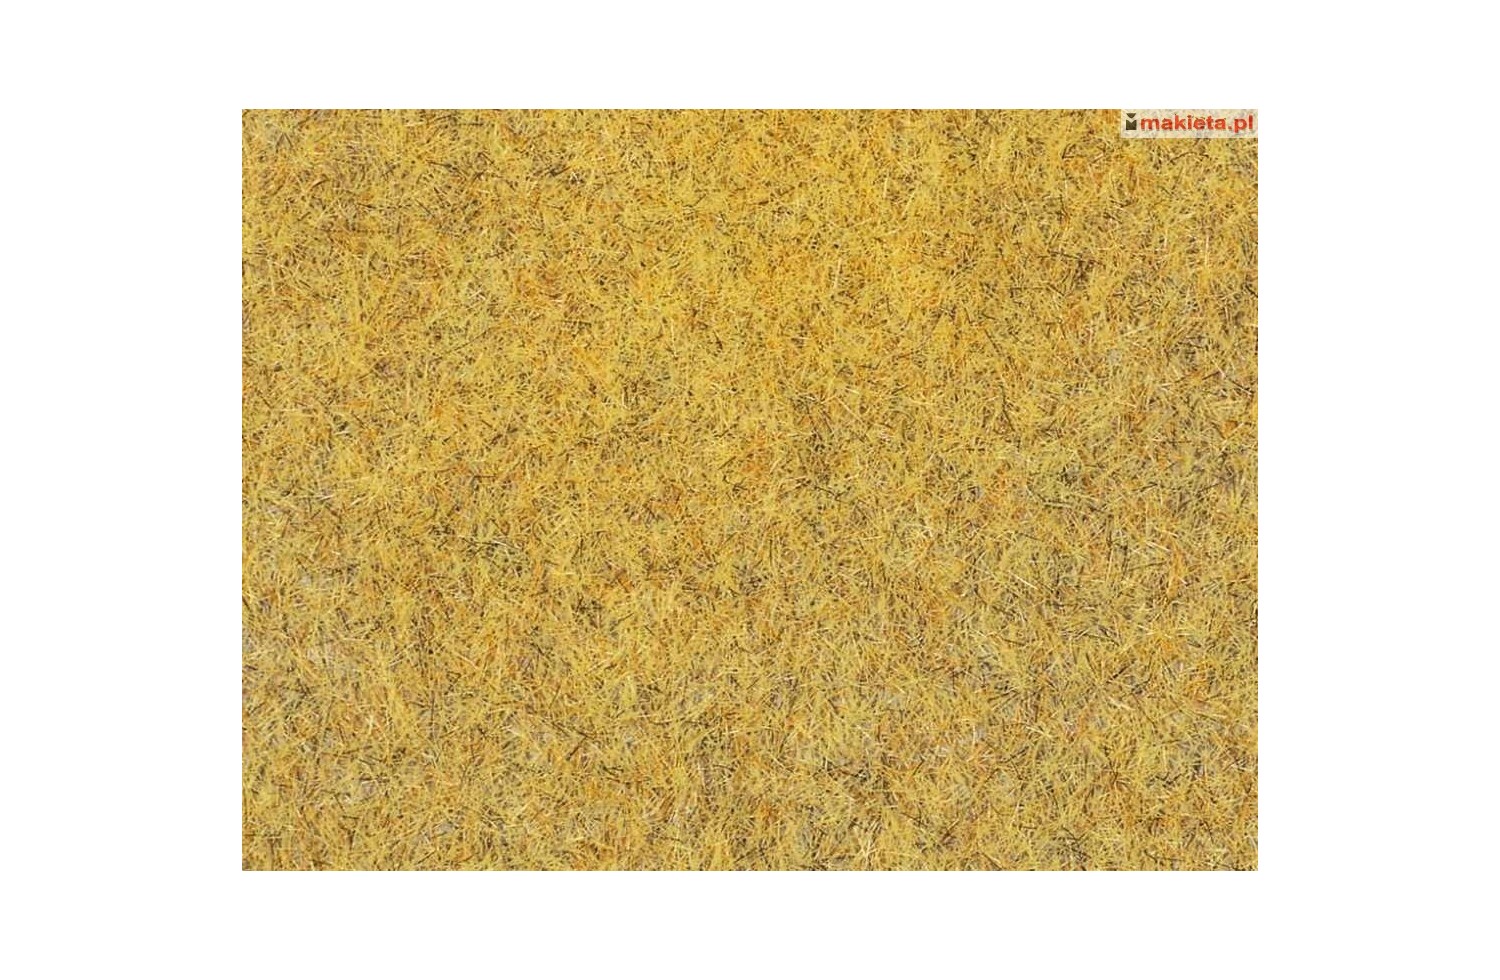 Auhagen 75111. Mata trawa jasna żółtozielona (ściernisko, pole kukurydzy...) 50 x 35 cm